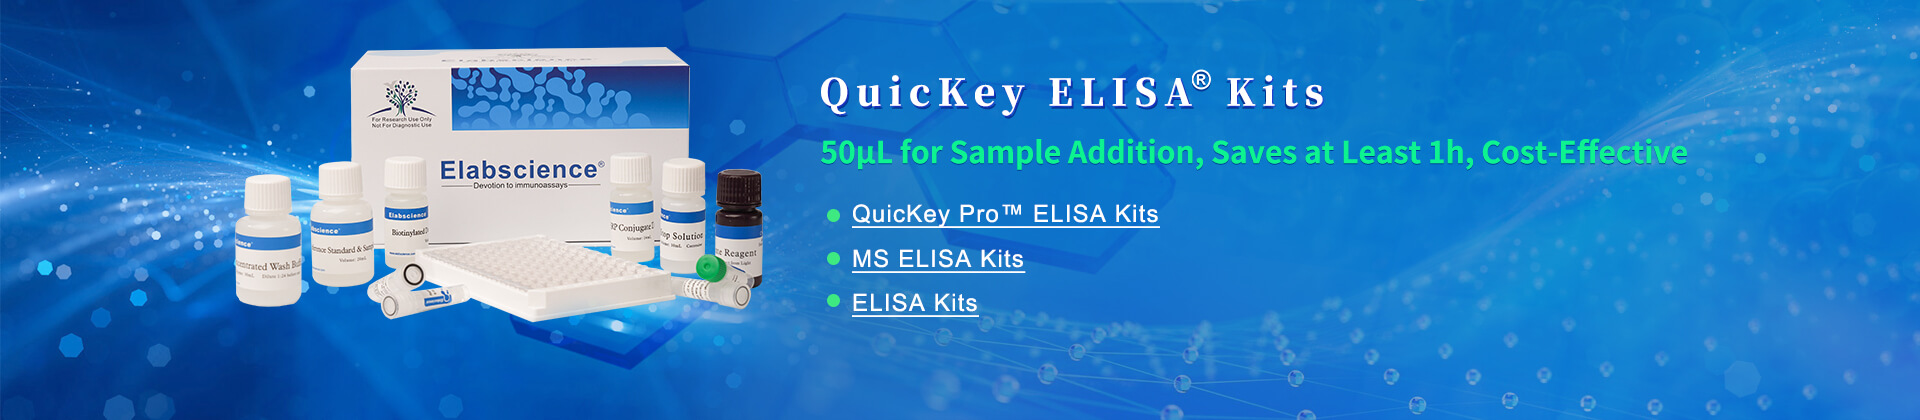 quickey elisa kits